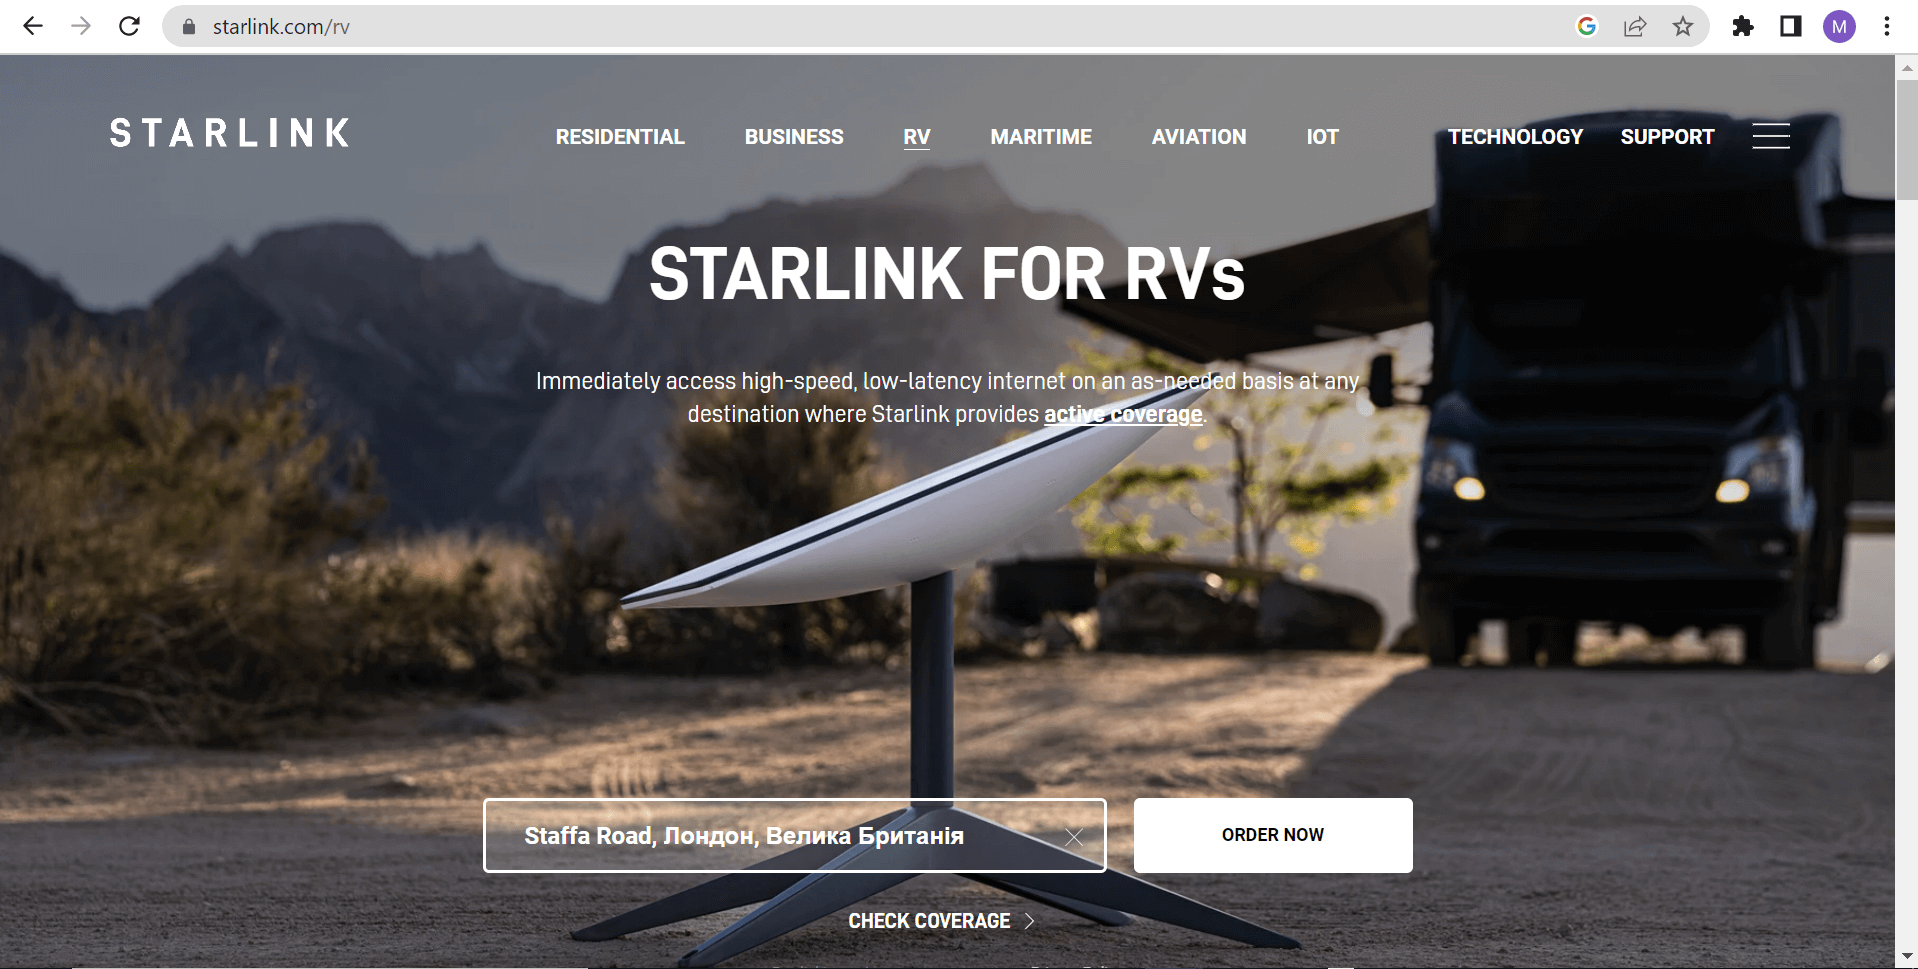 Як самостійно замовити Starlink з доставкою в Україну? - 4